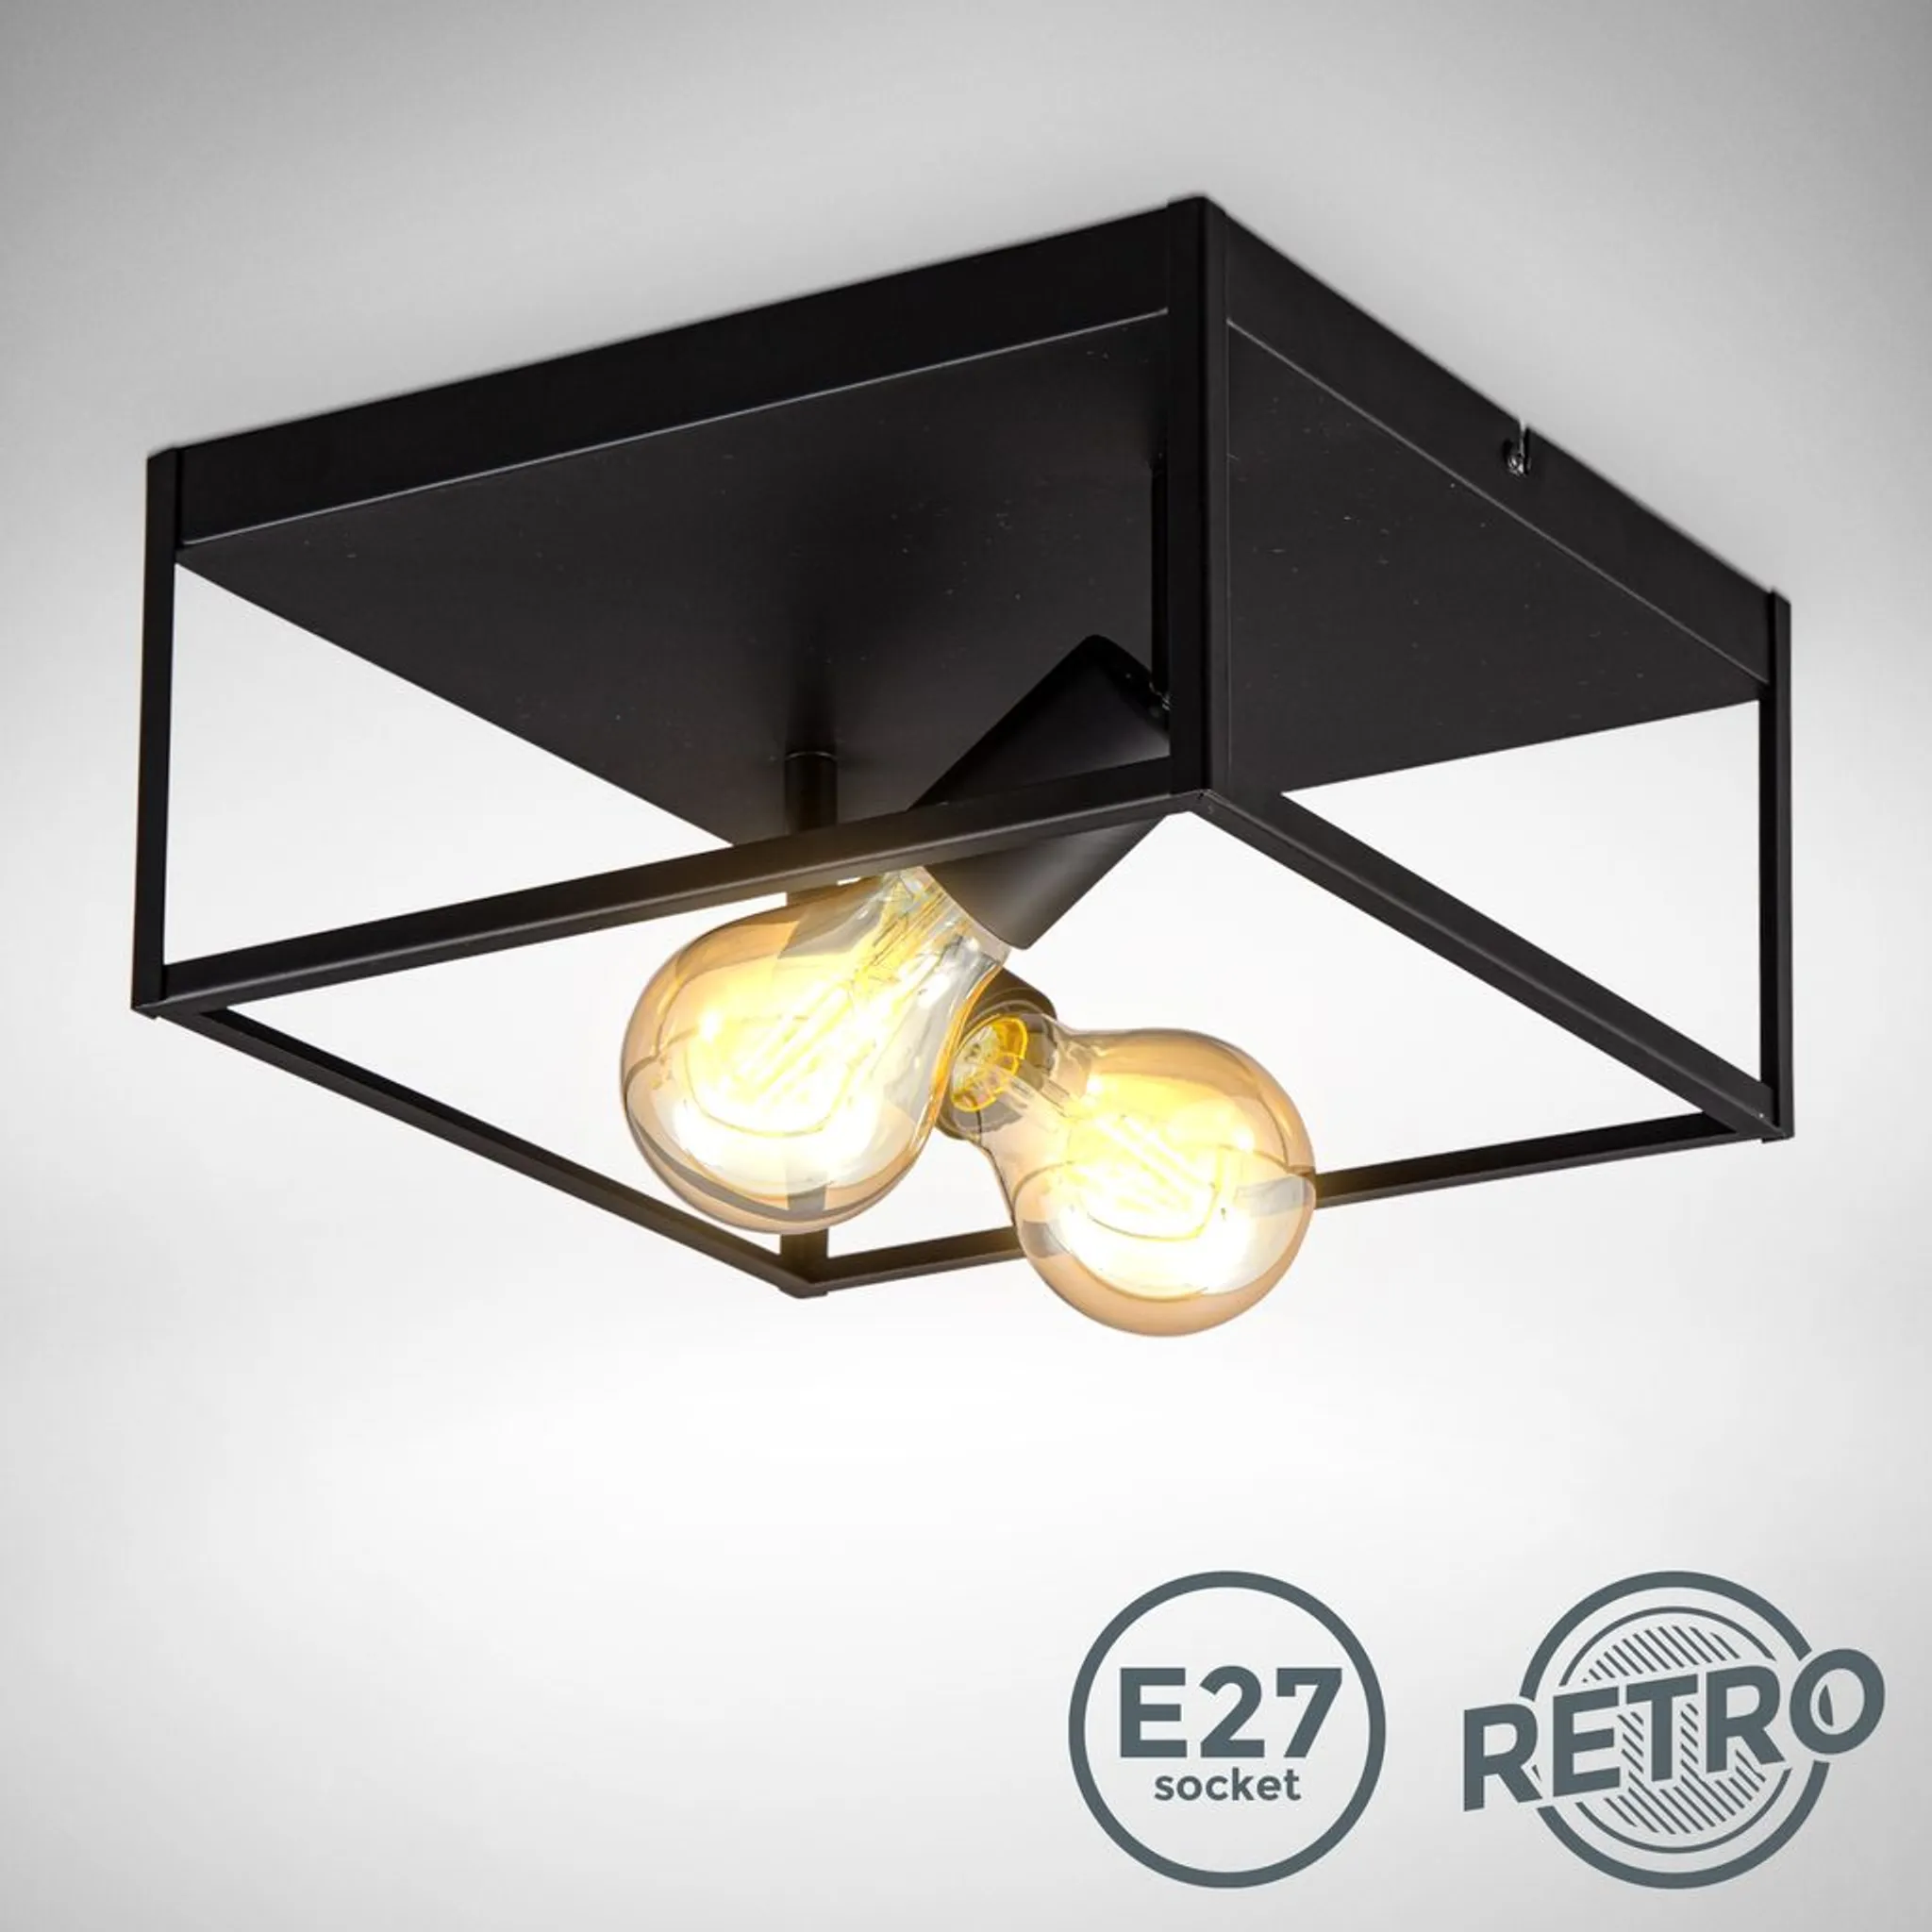 Deckenleuchte Vintage Draht schwarz Retro Metall Industrie Deckenlampe E27 Käfig